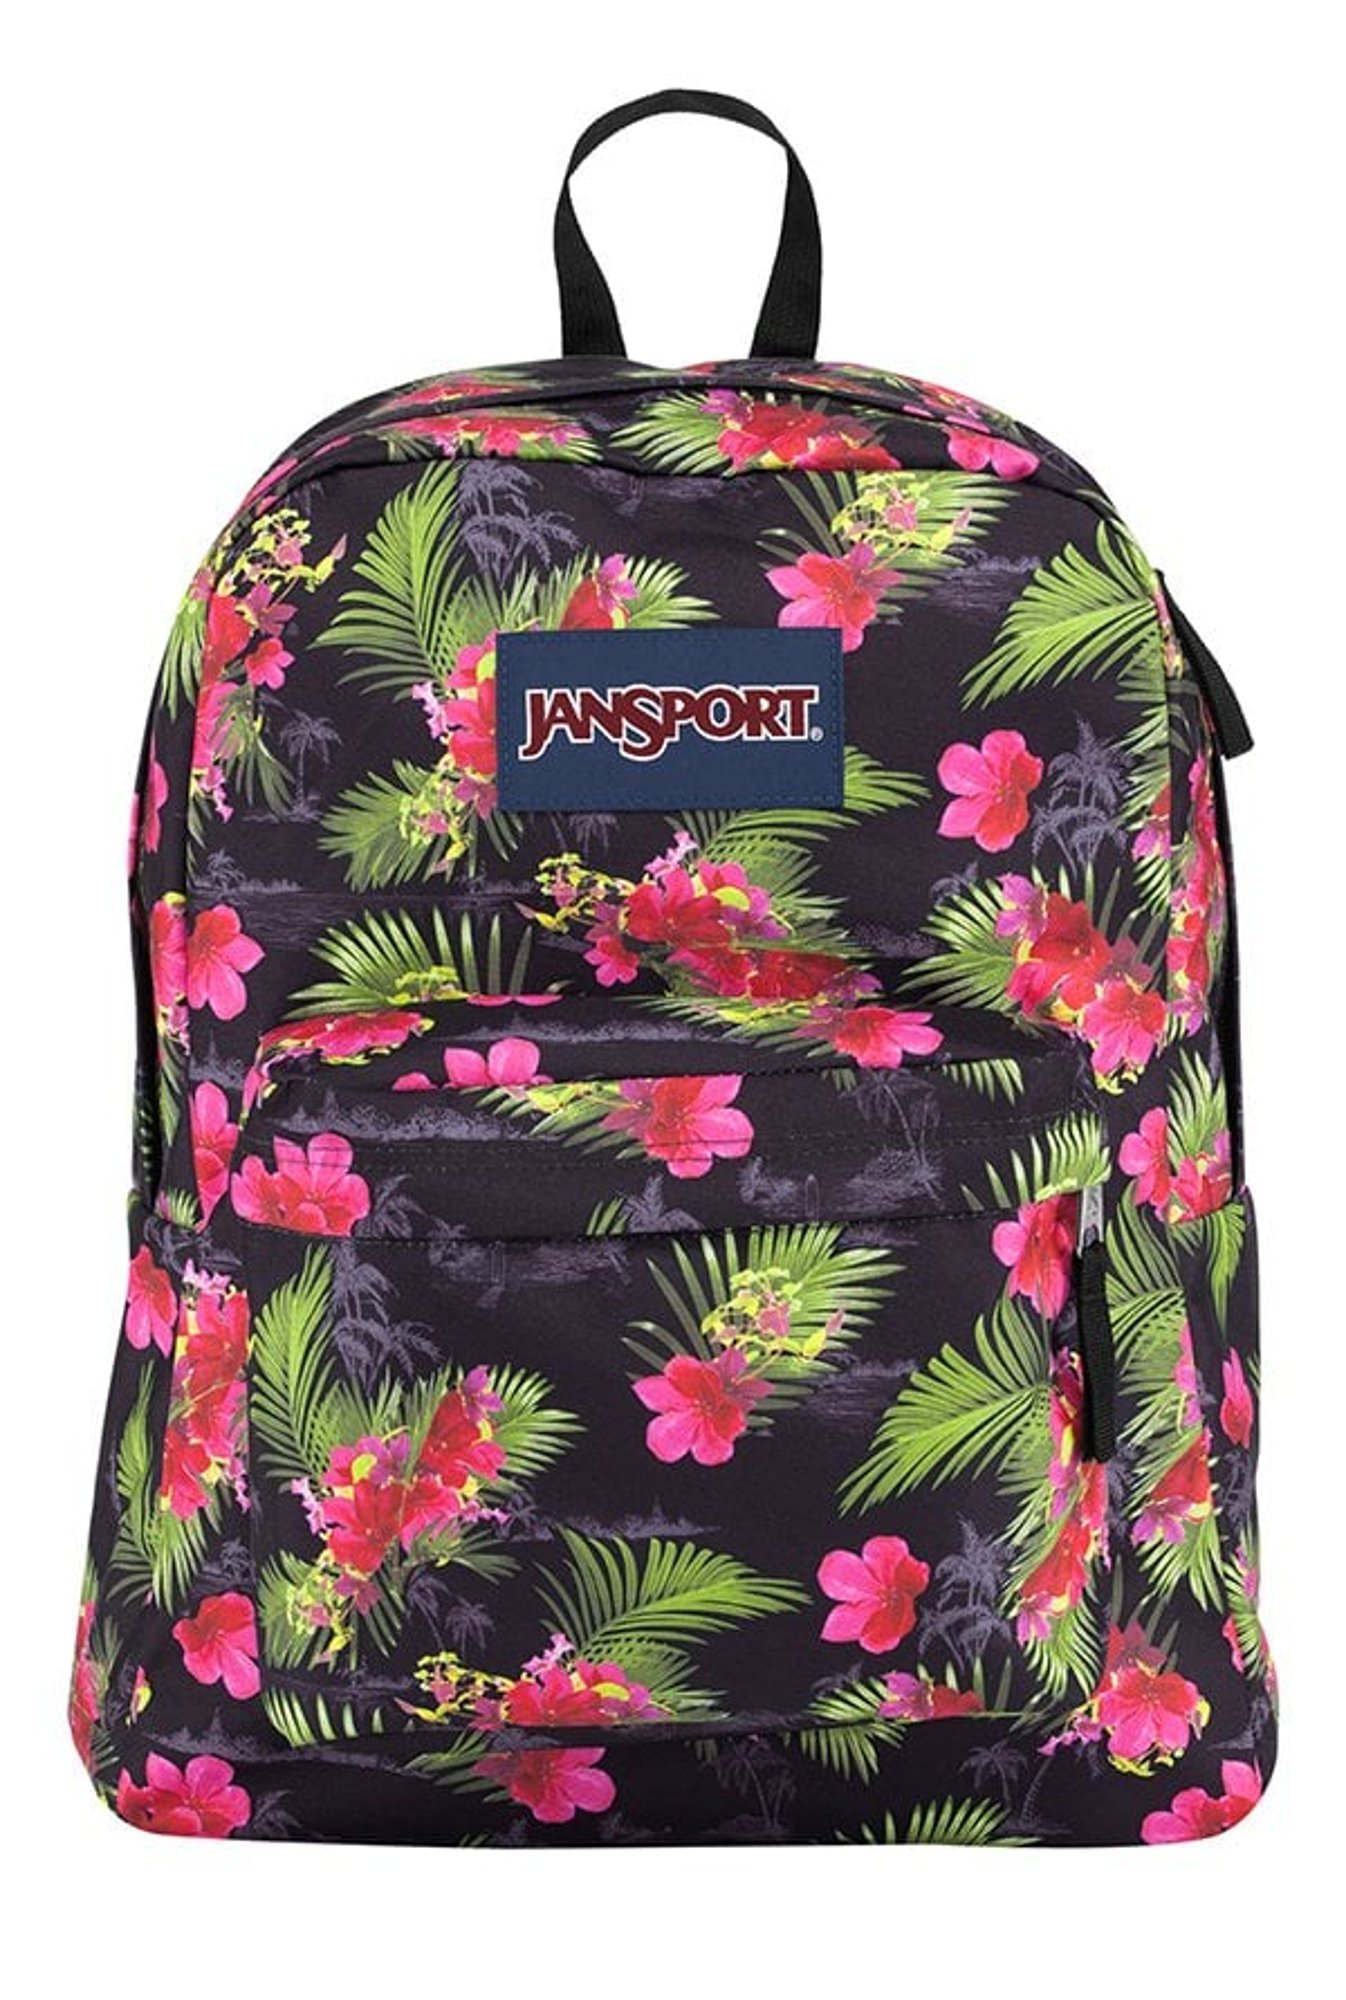 black floral jansport backpack